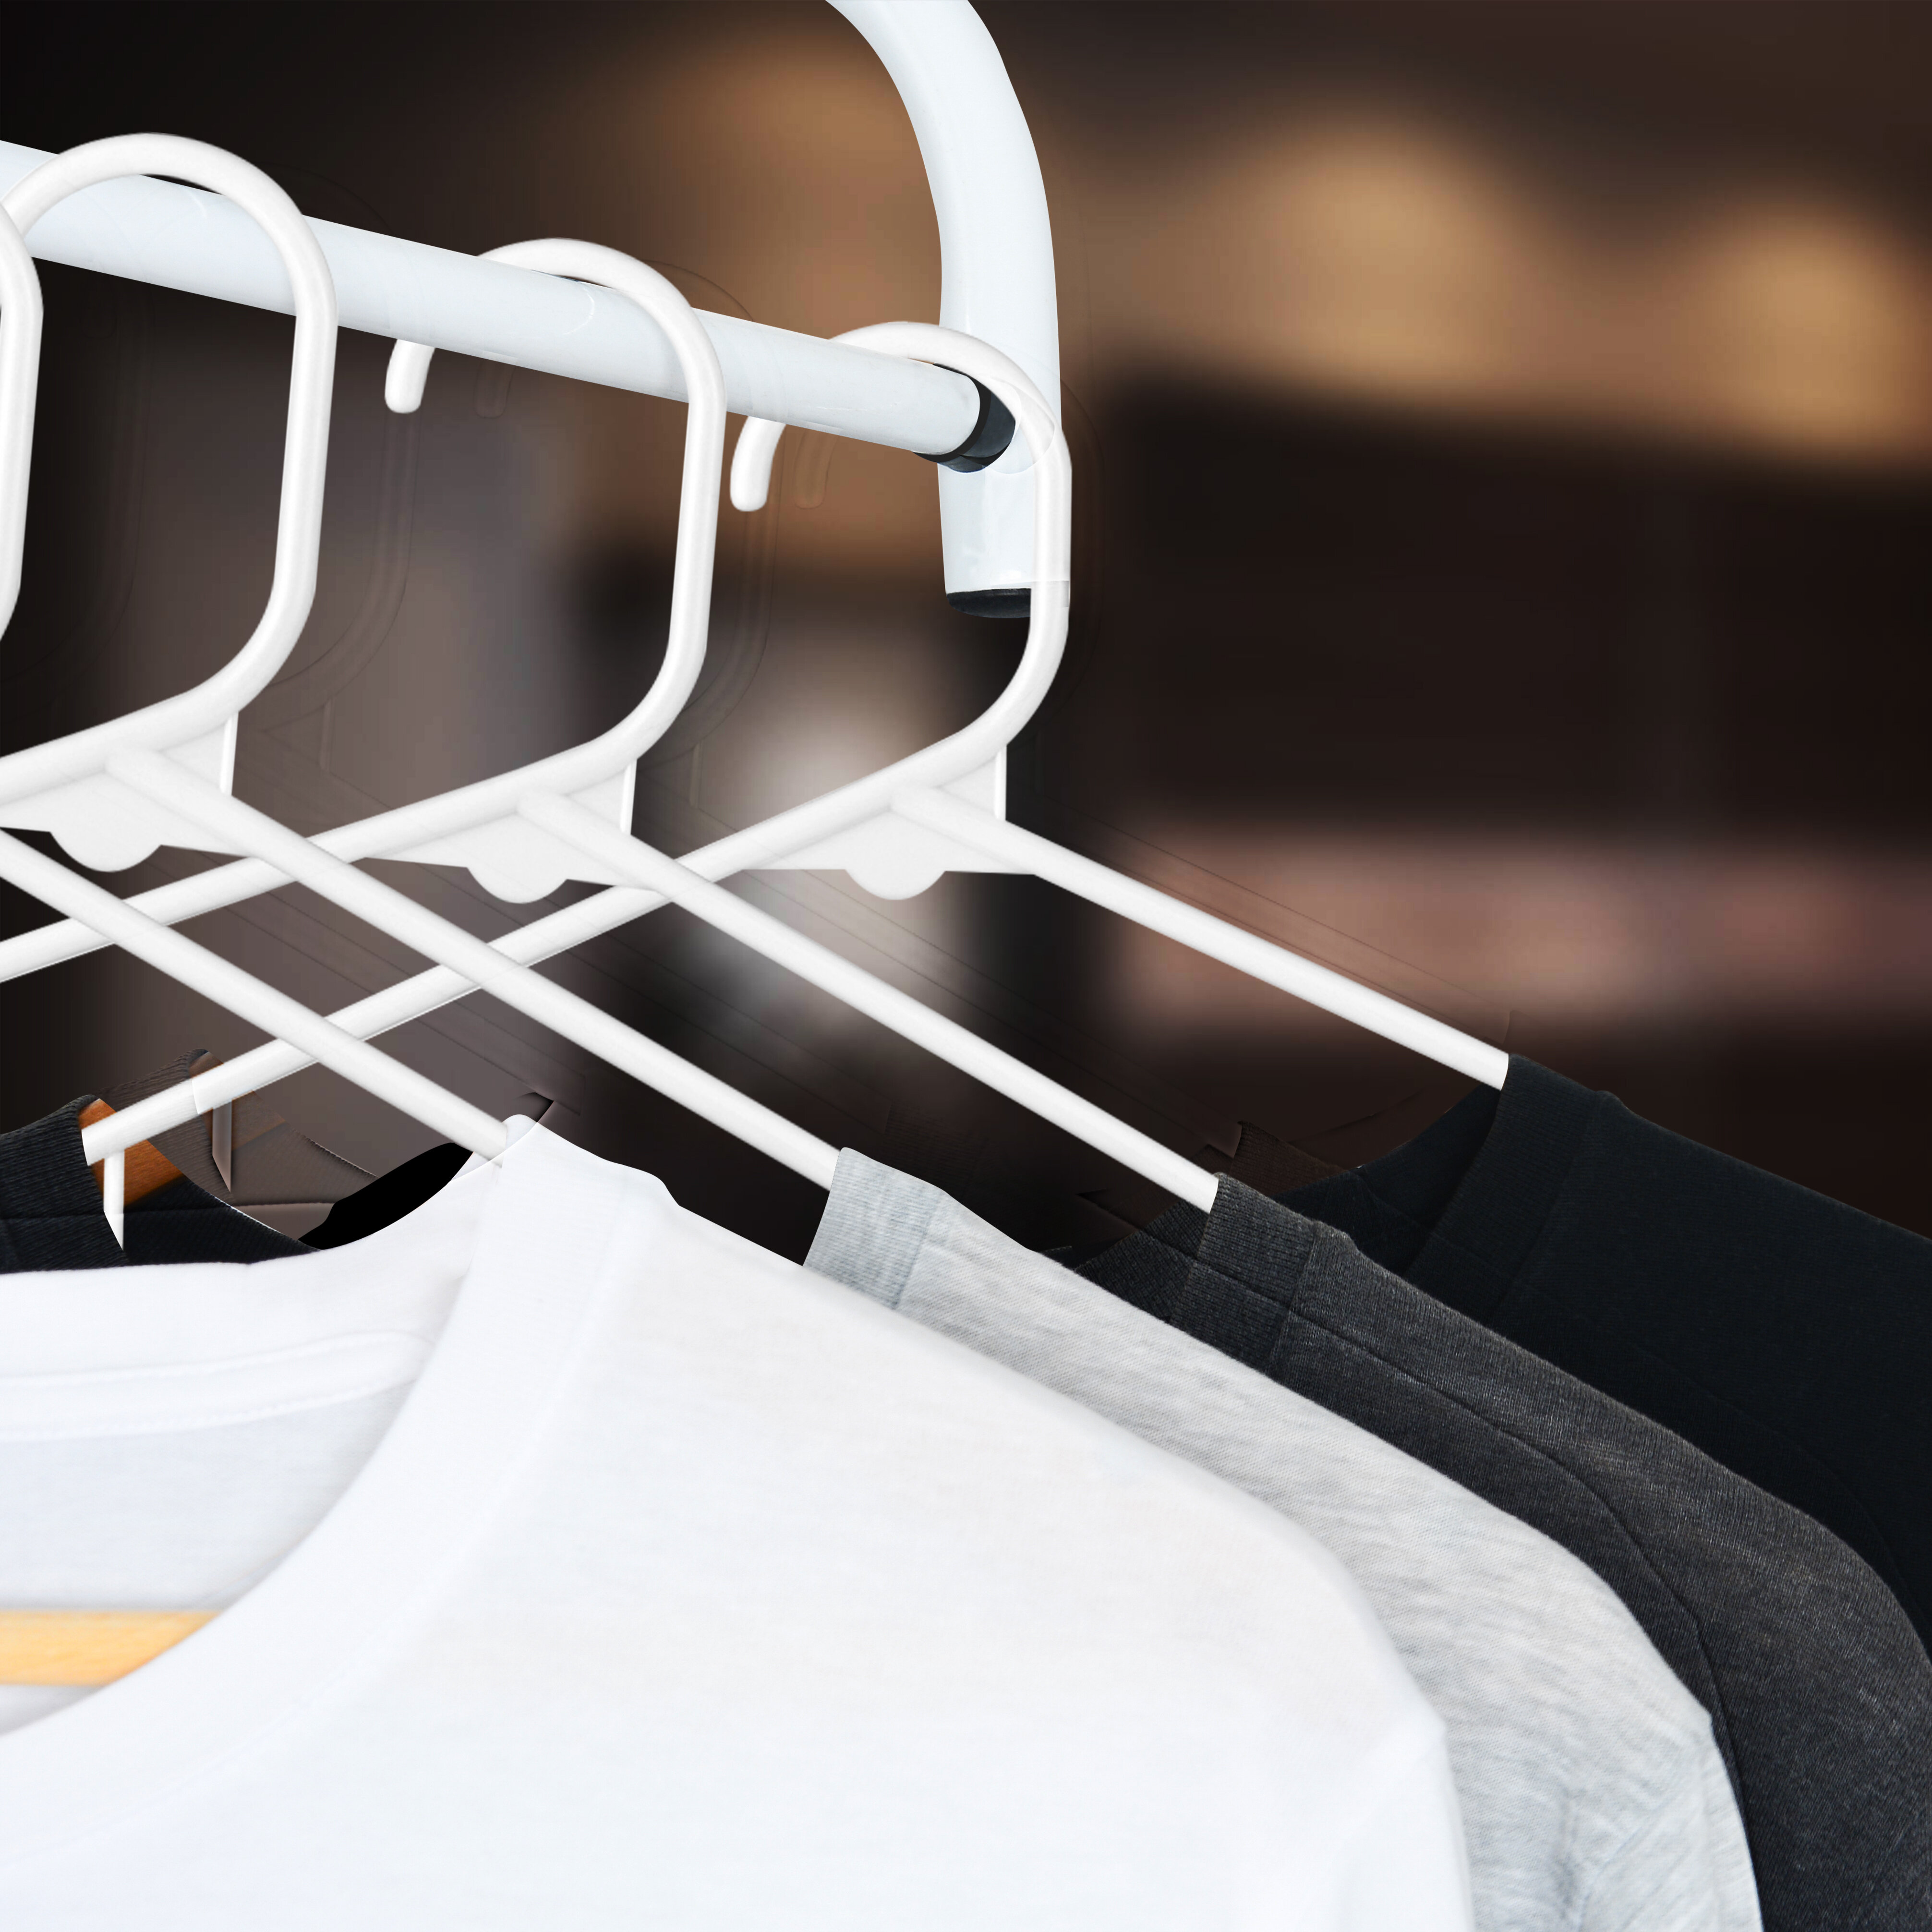 SereneLife Plastic Non-Slip Standard Hanger for Dress/Shirt